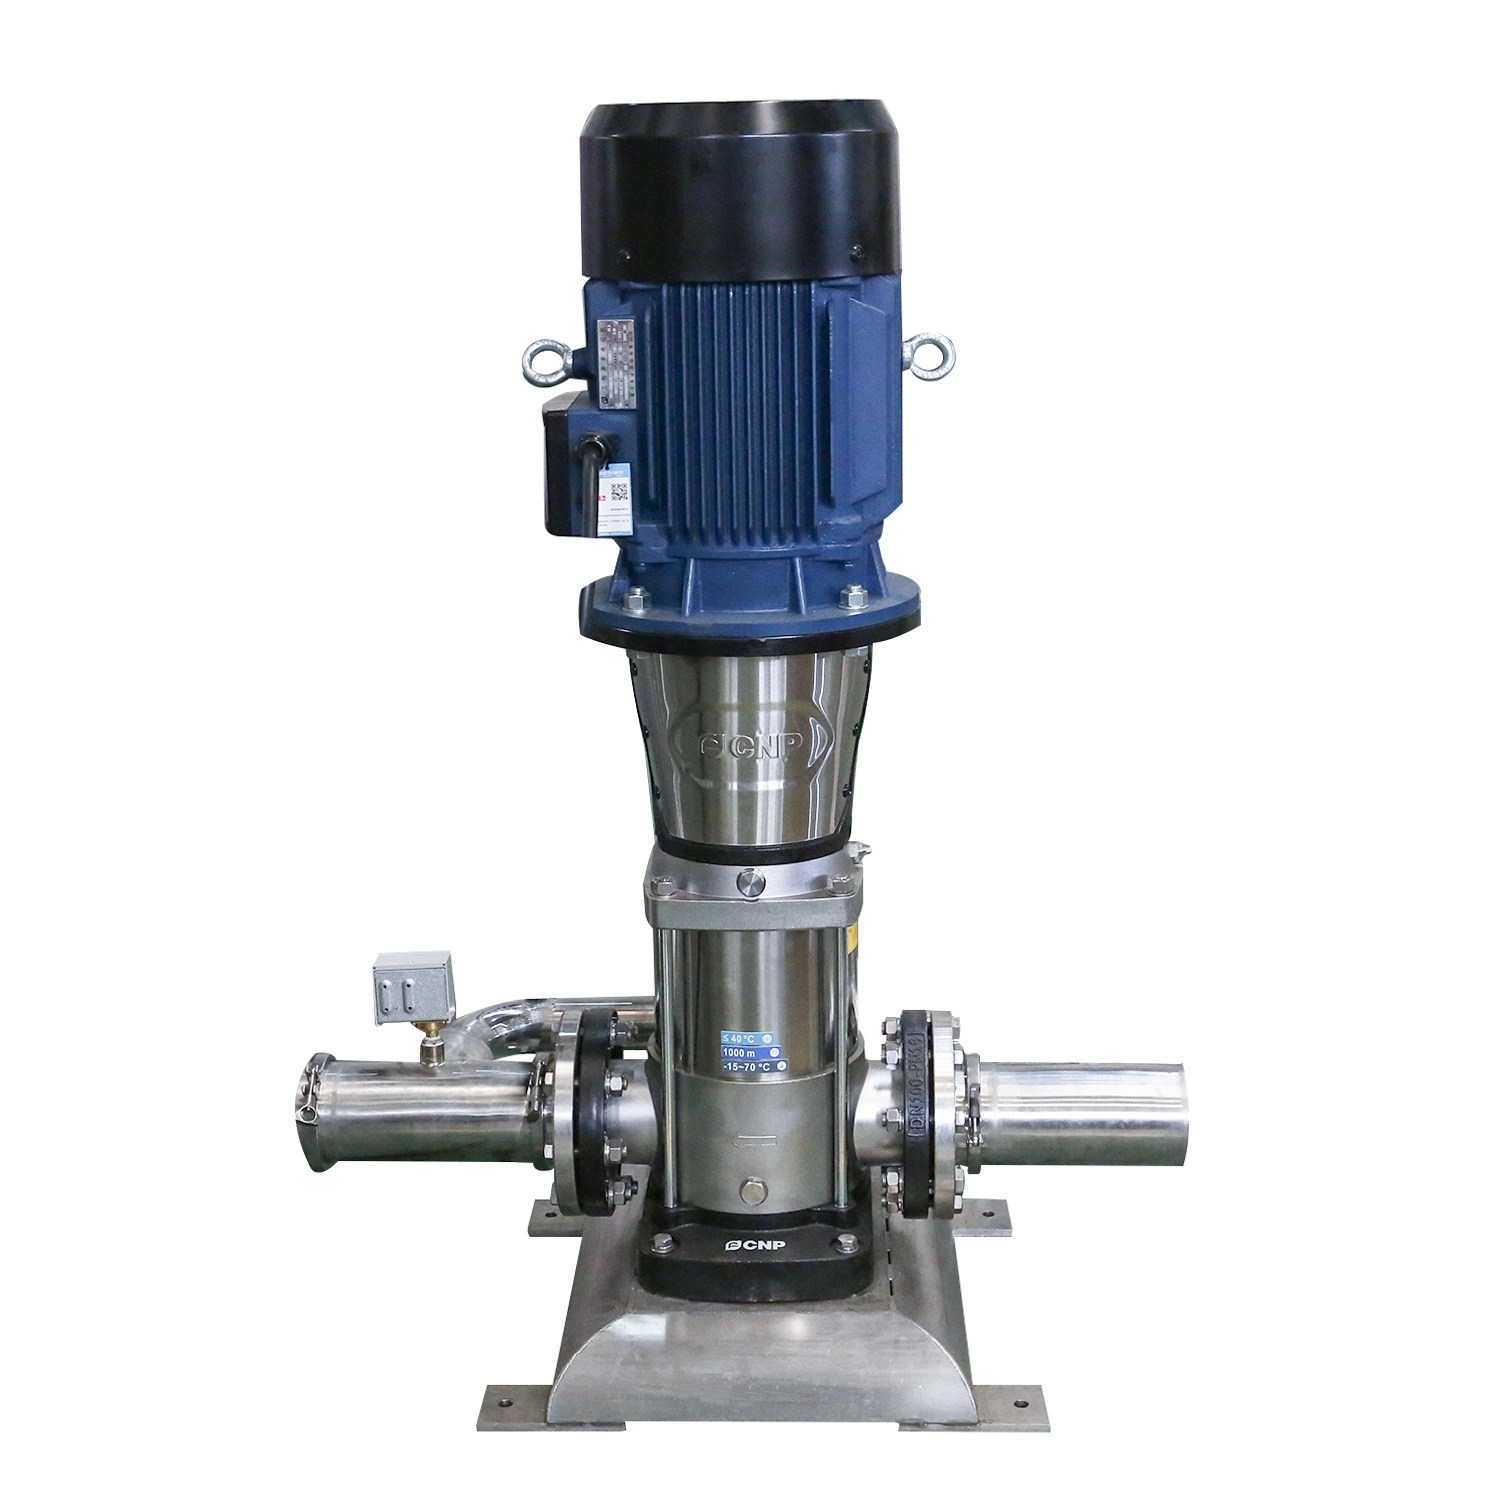 Automatische Reinigung System komplette RO Wasserfilter Produktionsmaschine Ausrüstung Flasche Mineral Reines Trinkwasser Reverse Osmose Wasser Behandlung Pflanze